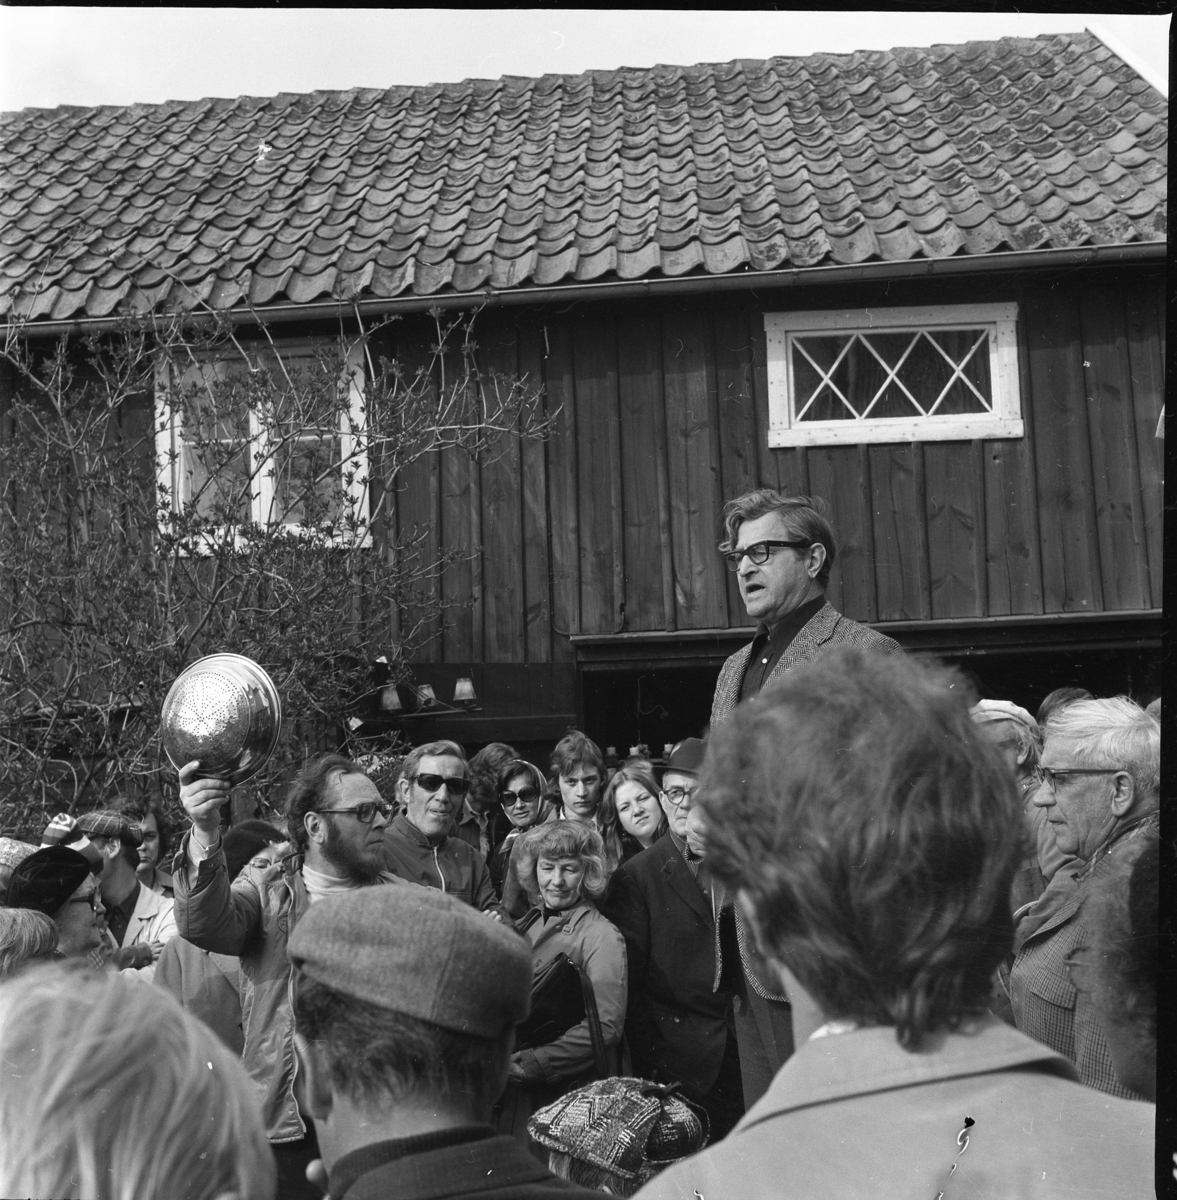 Auktionsutroparen John Karlsson i en folksamling. En man till vänster håller upp möjligen en durkslag i metall.